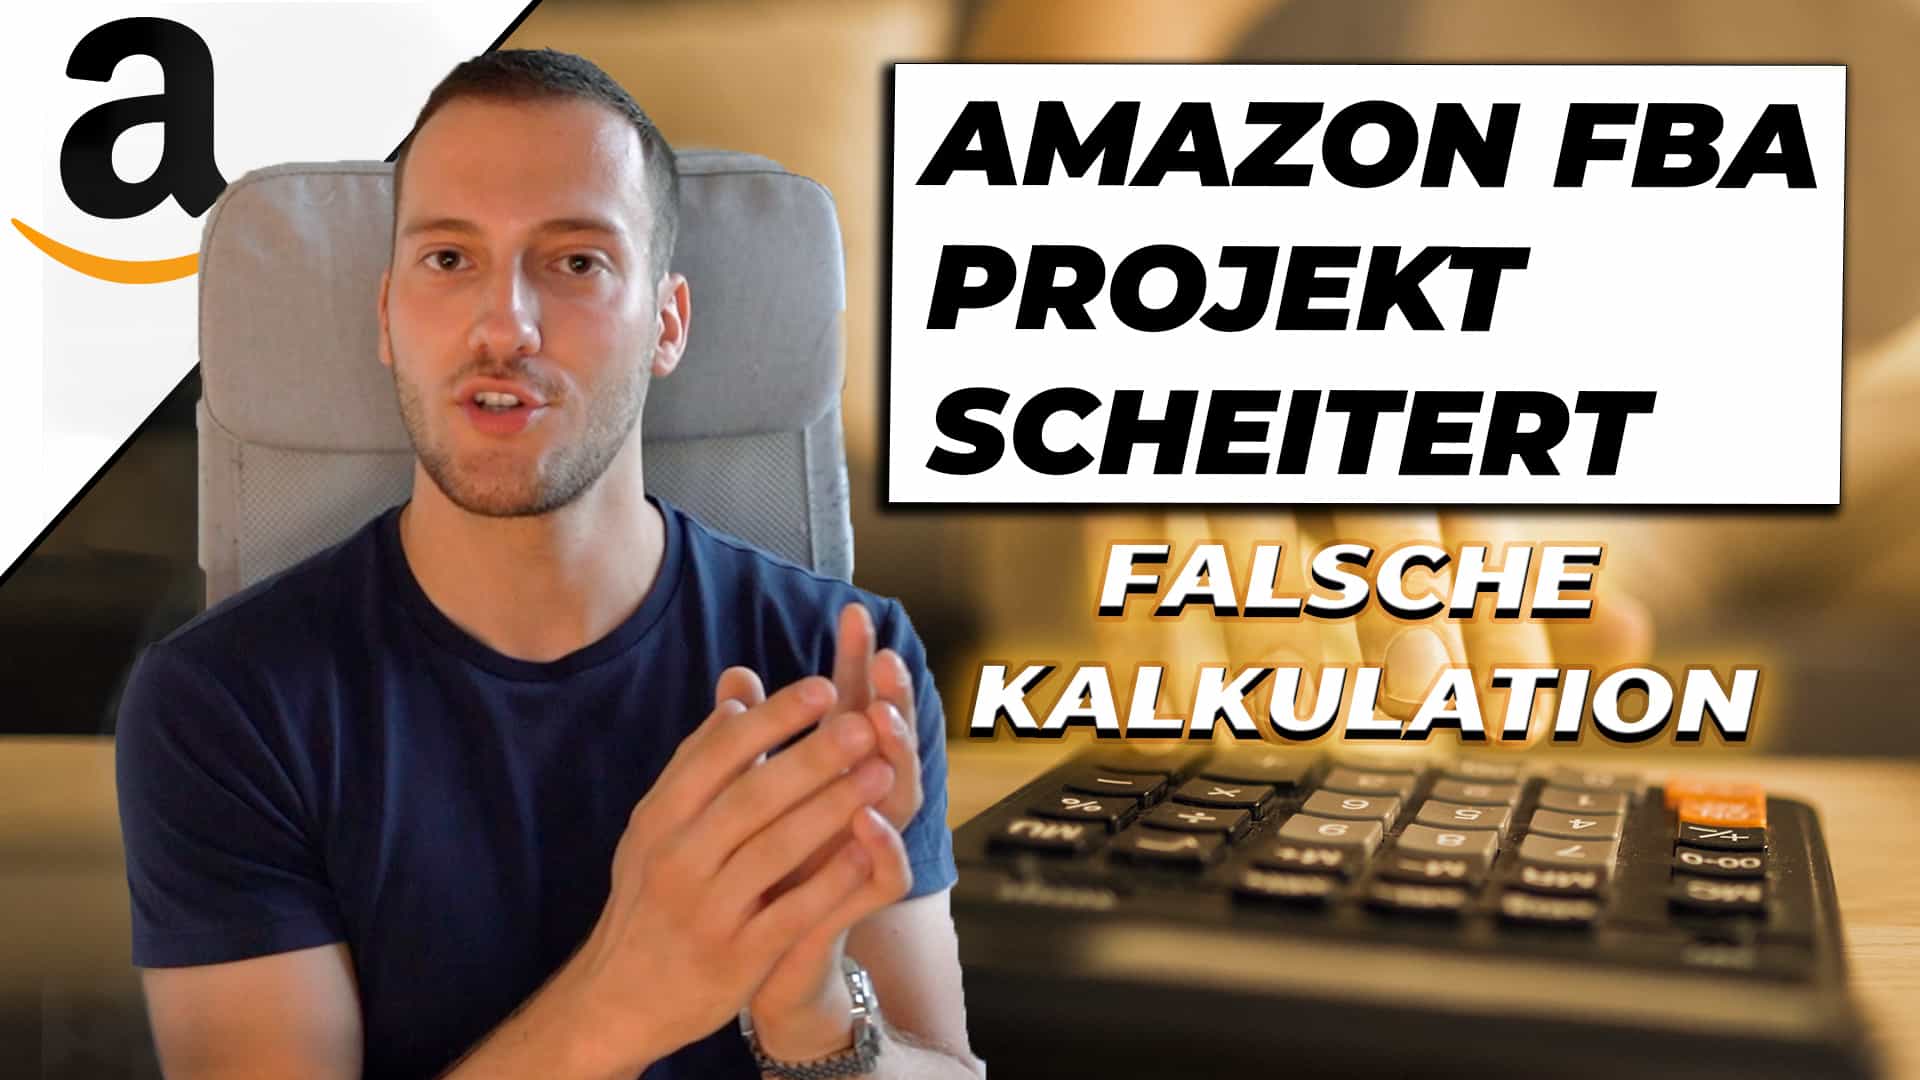 Amazon FBA Projekt scheitert aufgrund falscher Kalkulation